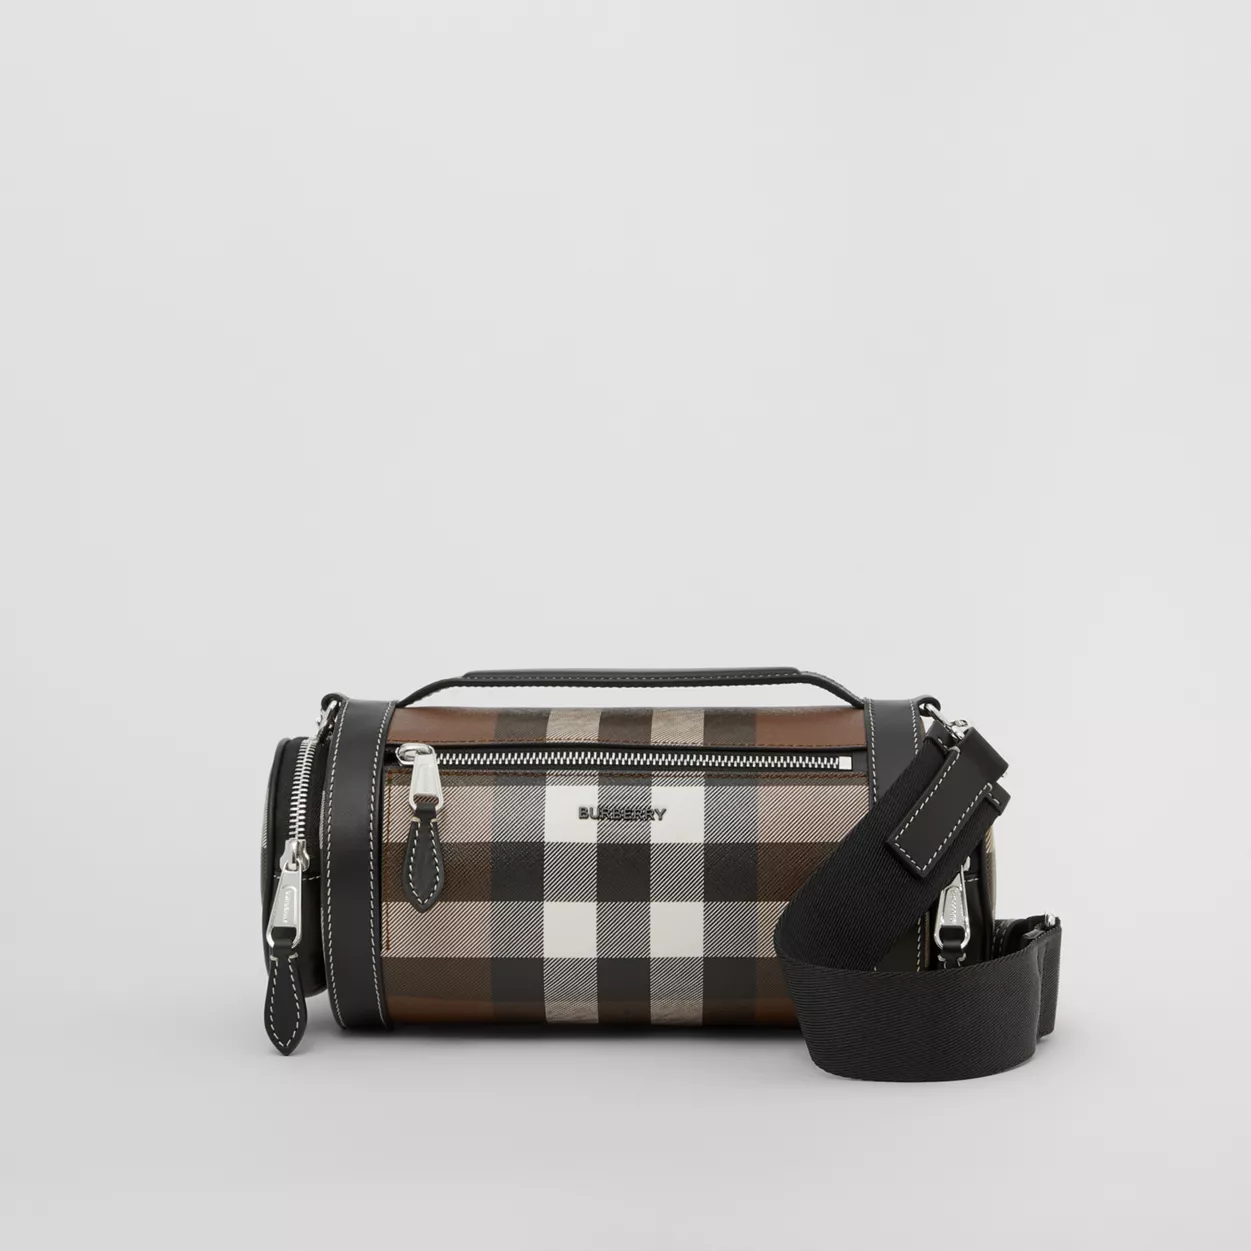 Túi đeo chéo nam Burberry sở hữu thiết kế và chất liệu đẳng cấp